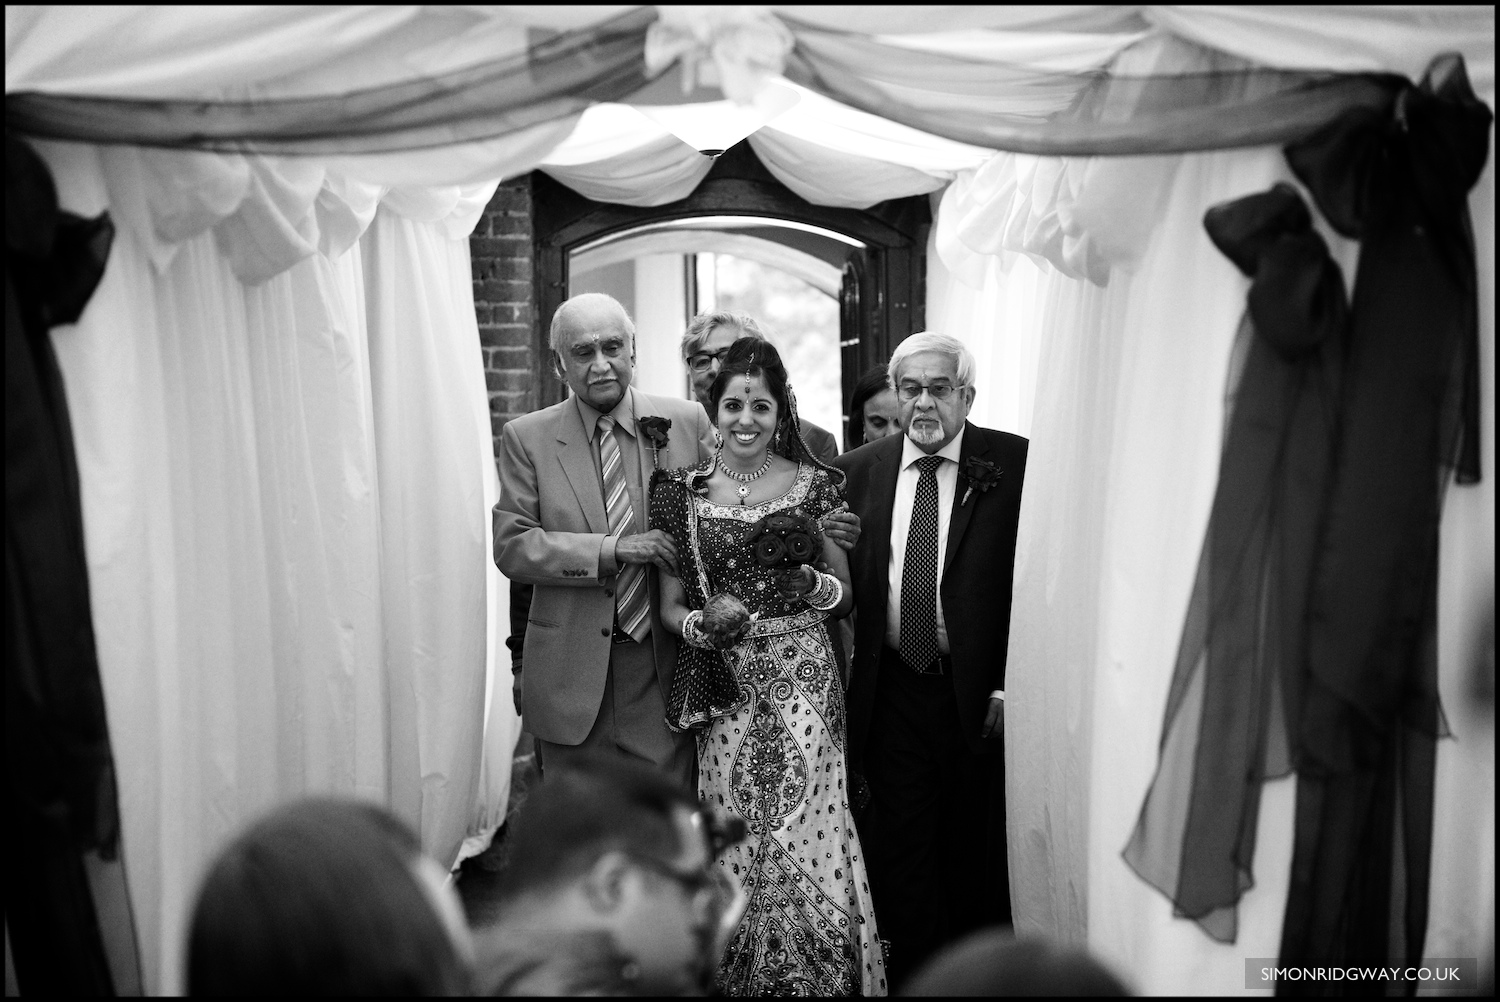  All images Copyright © Simon Ridgway / simonridgway.co.uk / UK Wedding Photojournalist & Documentary Wedding Photographer 